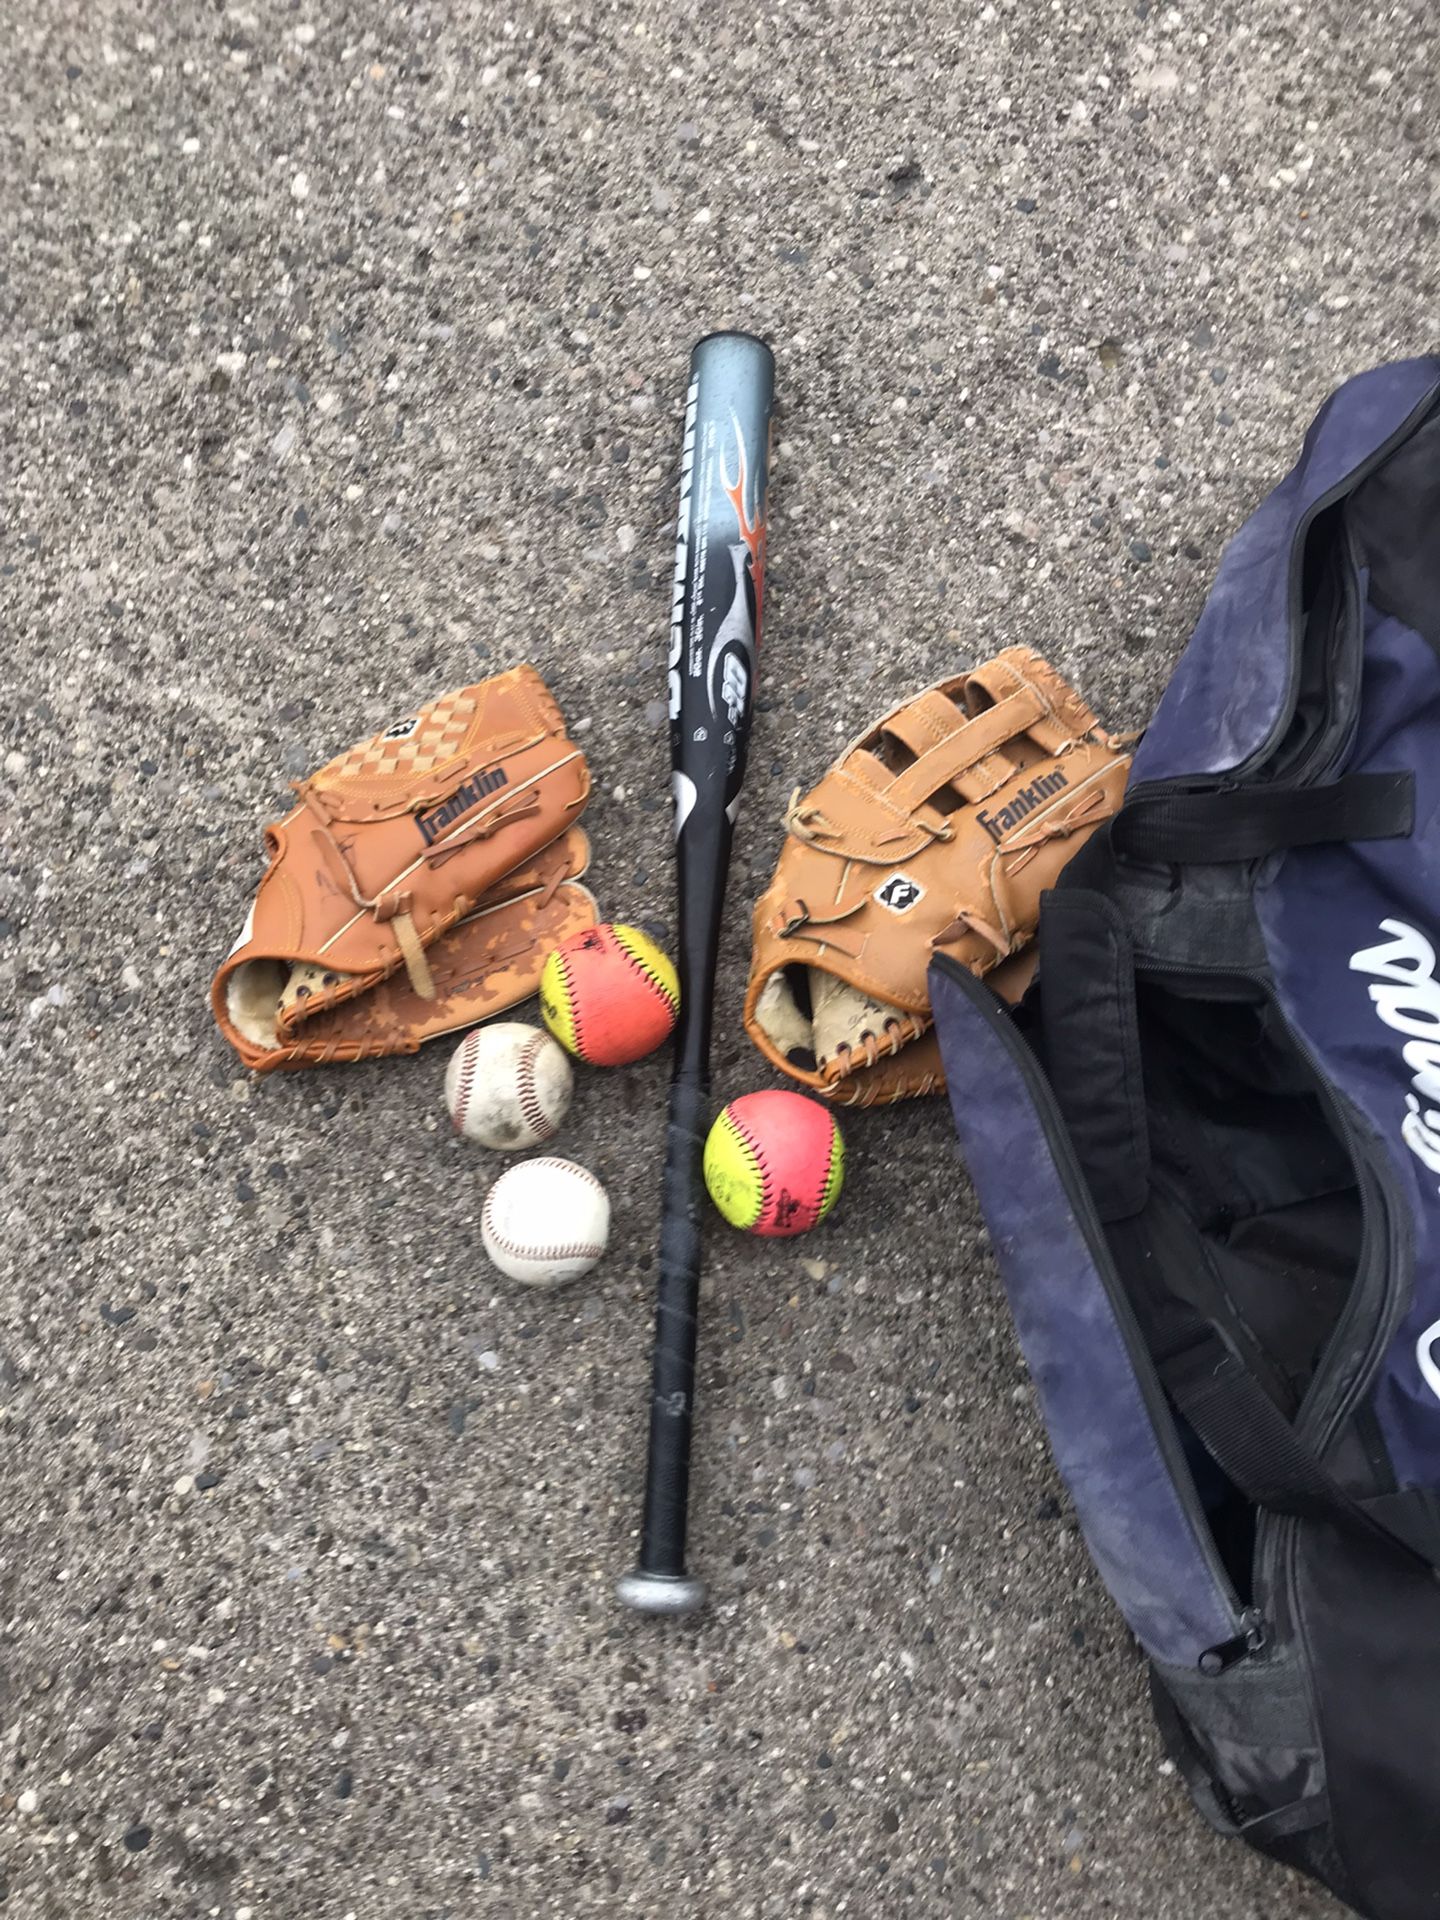 Baseball Bat And Gloves 